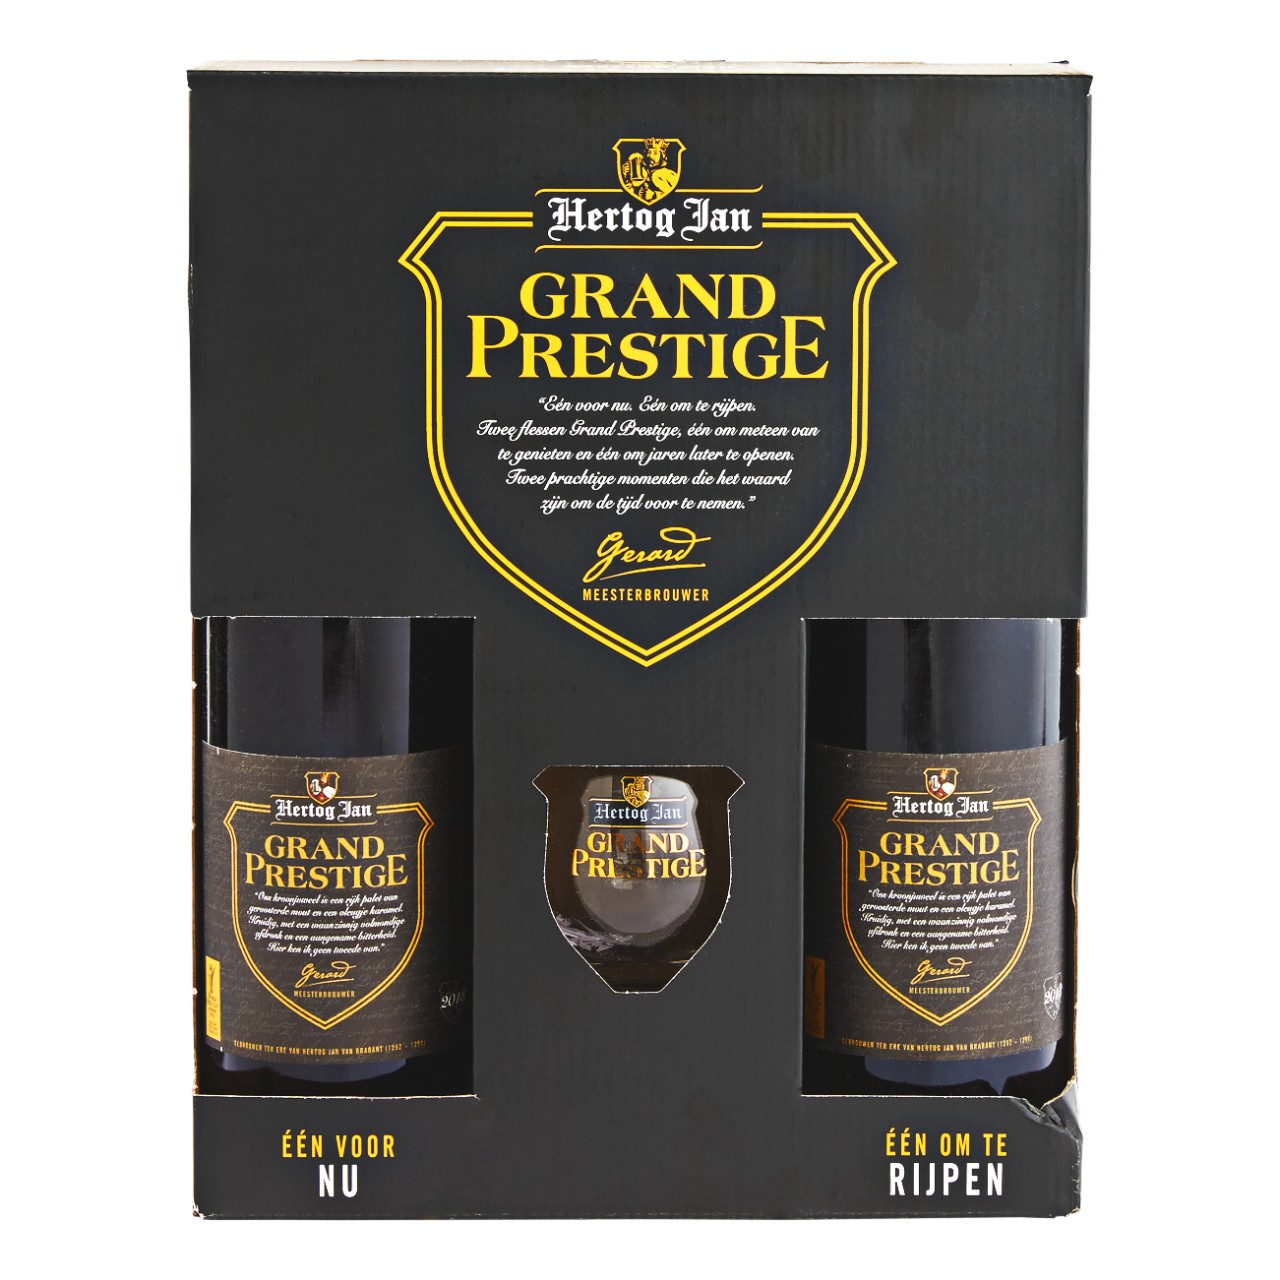 Grand prestige geschenkverpakking